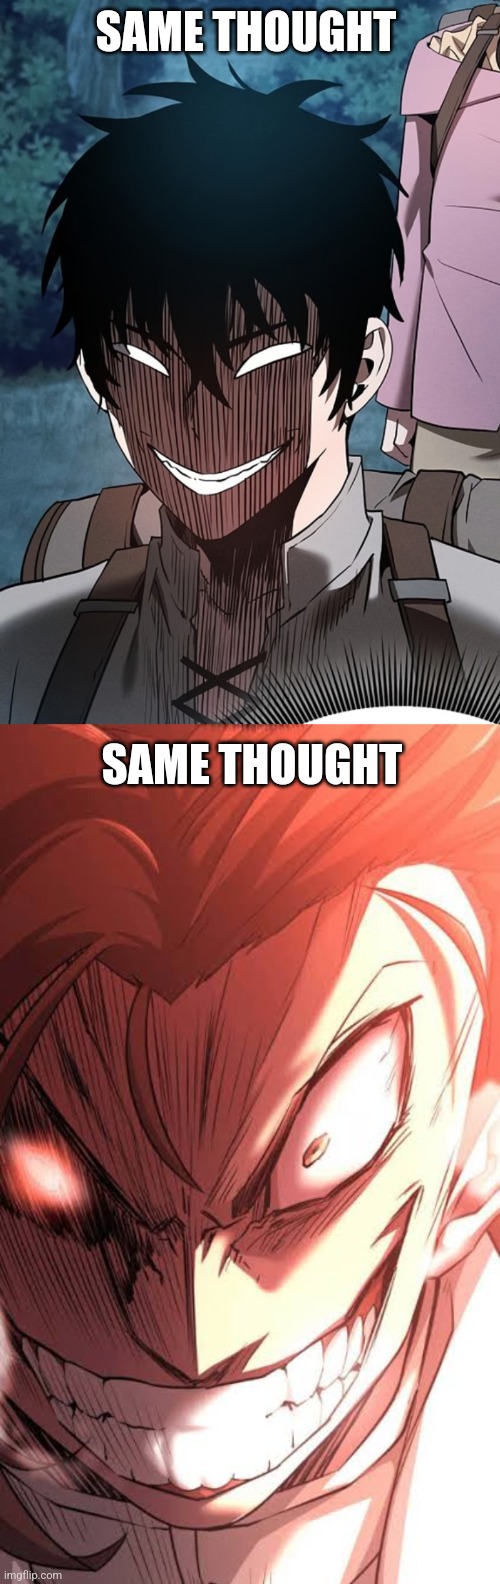 Same thought | SAME THOUGHT; SAME THOUGHT | image tagged in anime meme | made w/ Imgflip meme maker